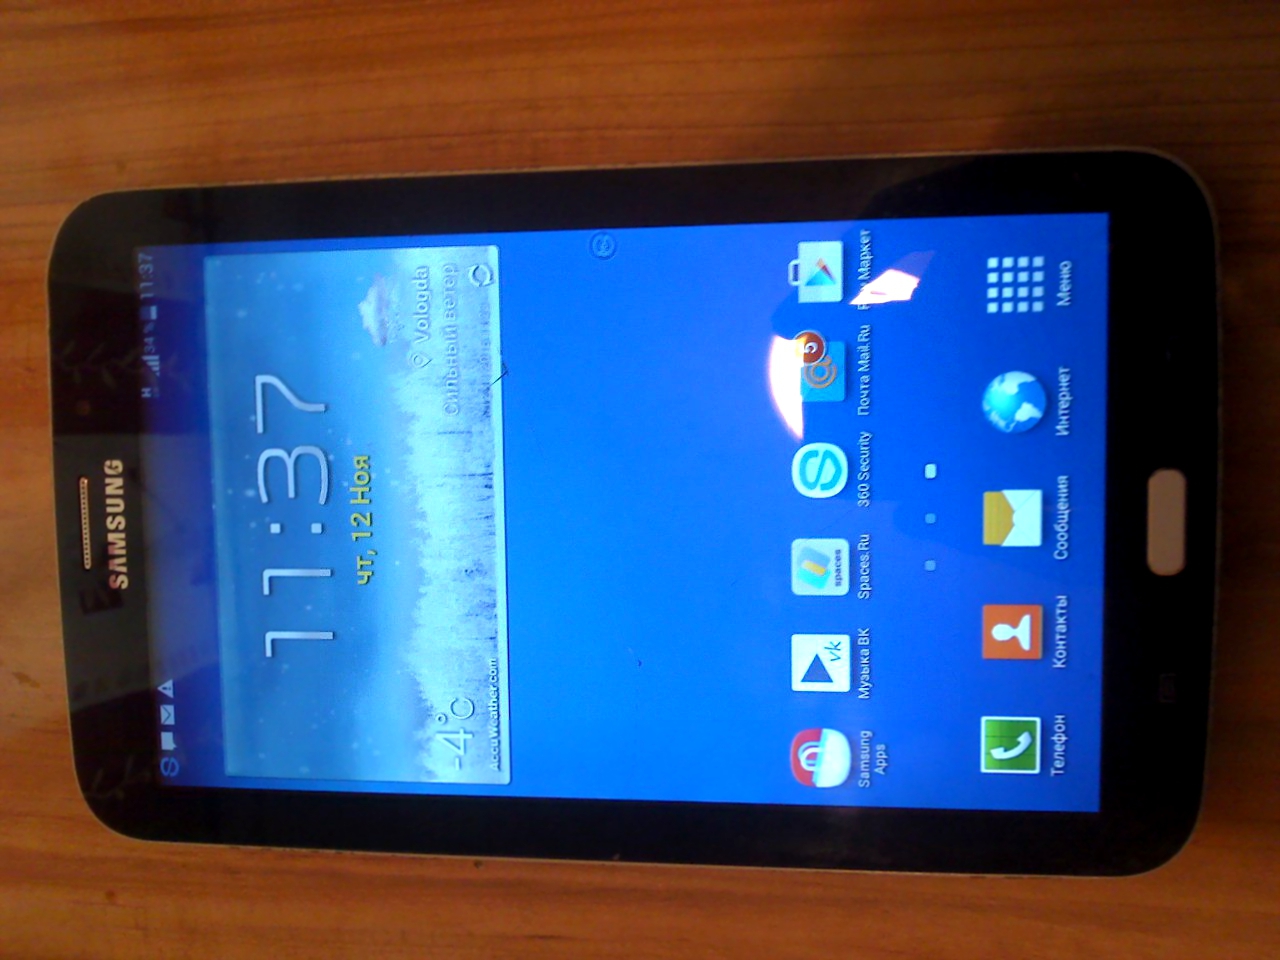 продам или обменяю Samsung Galaxy tab3 с трещинками на внешнем стекле,но работает так же.корпус сзади и по бокам  потерт,акб держит хорошо.режим телефона,3G,8G,1 оператива,два динамика внизу.с блютуз гарнитурой sony ericsson новой отдам за три.без две с половиной!